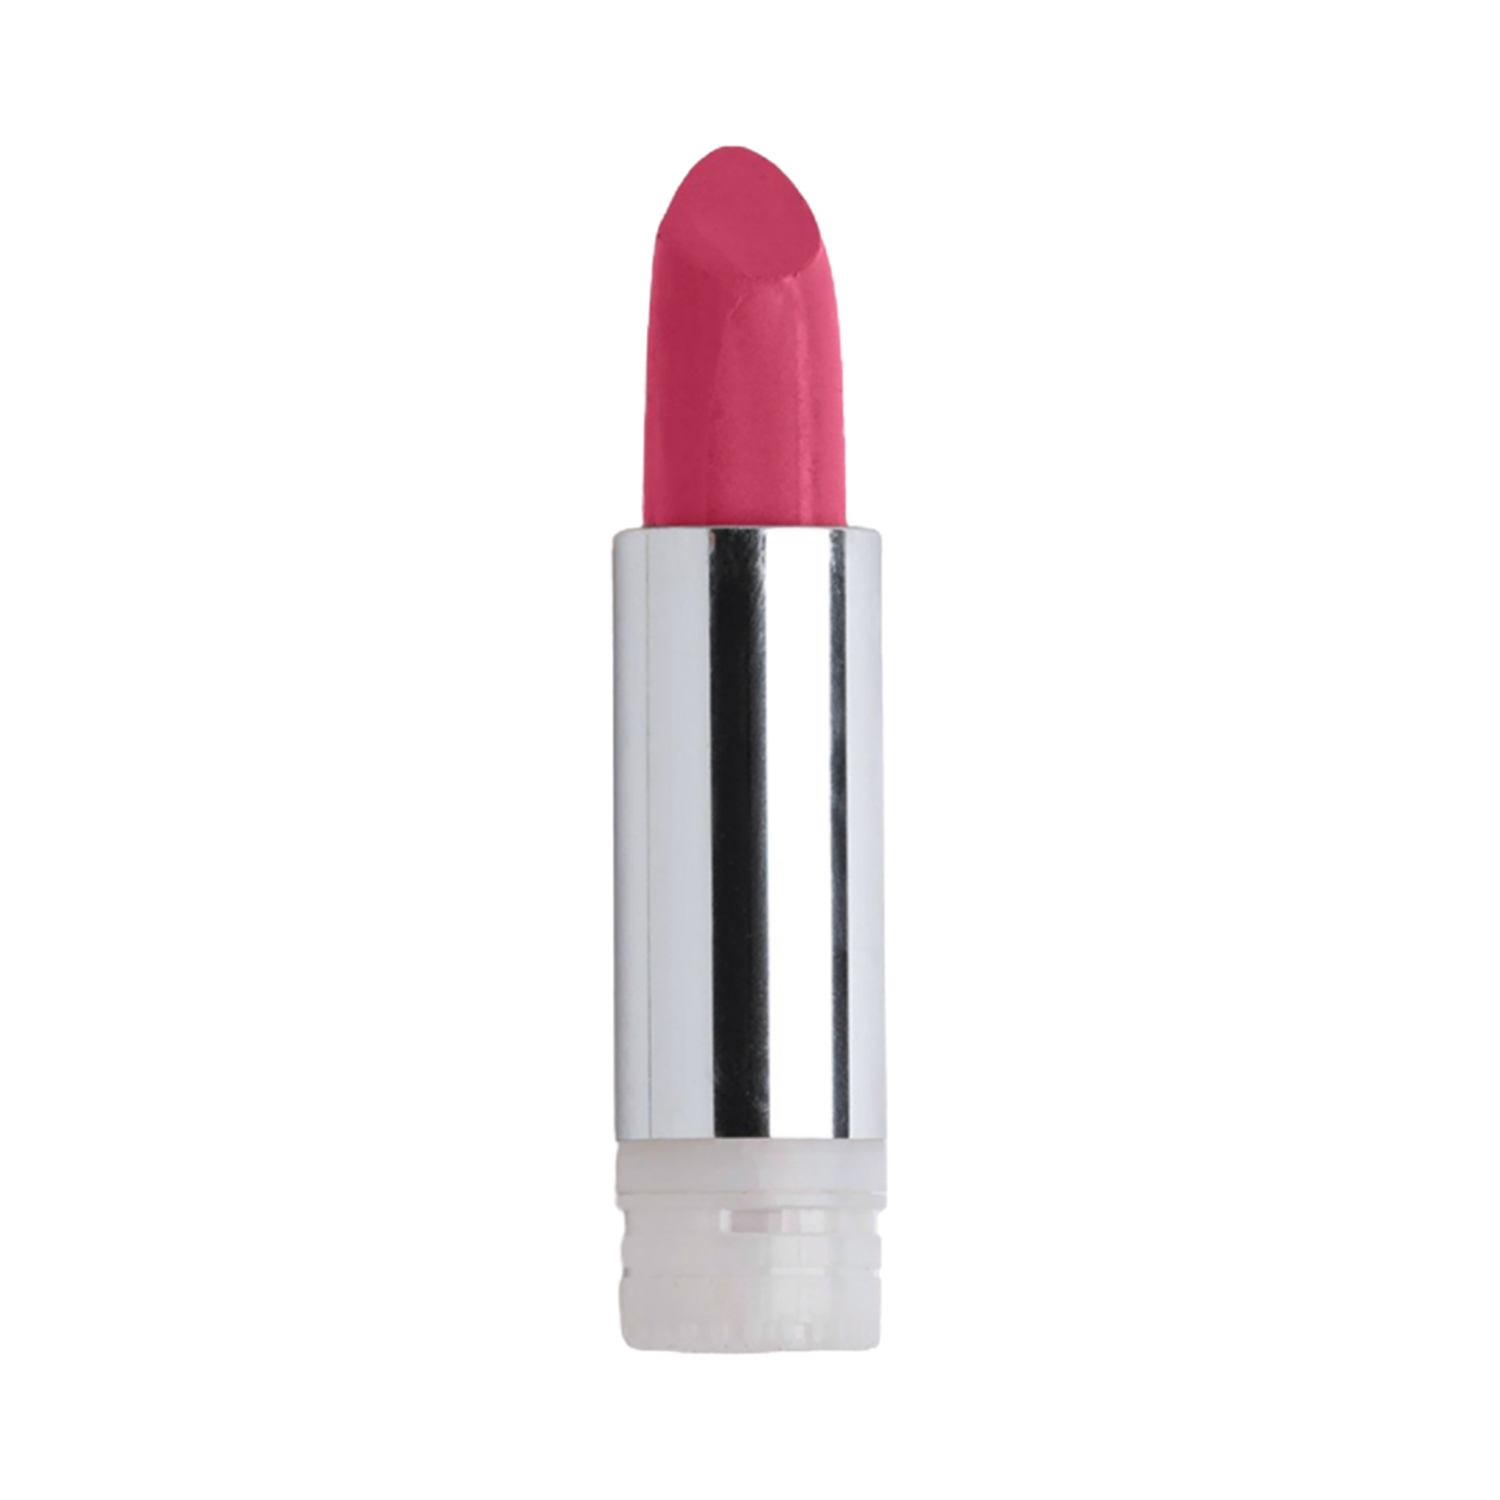 asa beauty | asa beauty Beauty Hydra-Matte Lipstick Refill - Crushed Cherry (4.2g)